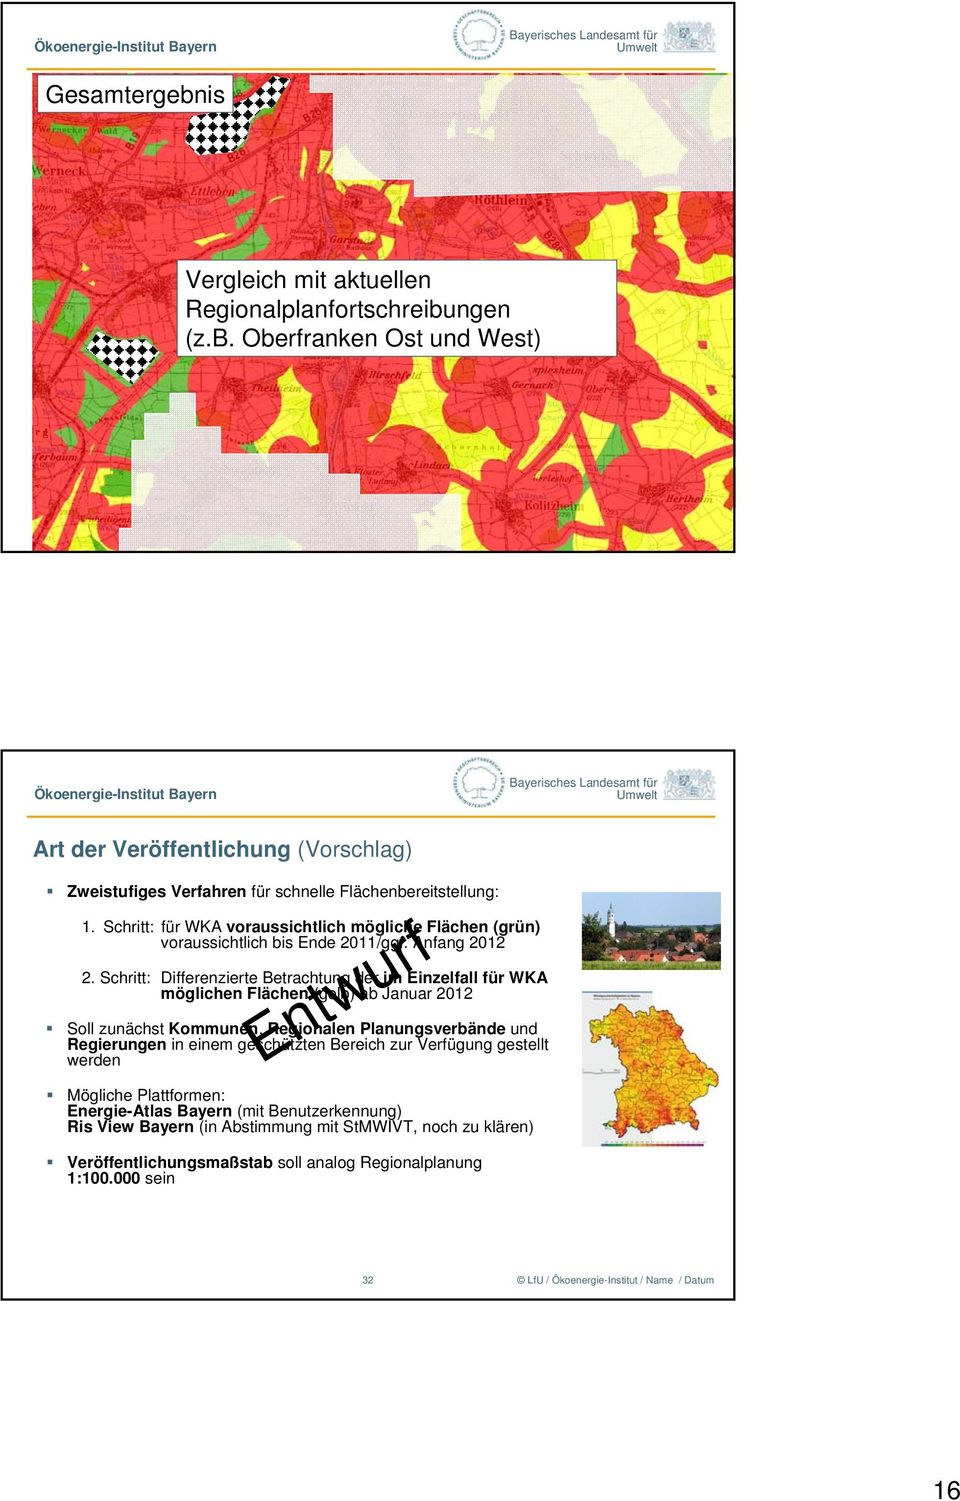 Schritt: Differenzierte Betrachtung der im Einzelfall für WKA möglichen Flächen (gelb) ab Januar 2012 Entwurf Soll zunächst Kommunen, Regionalen Planungsverbände und Regierungen in